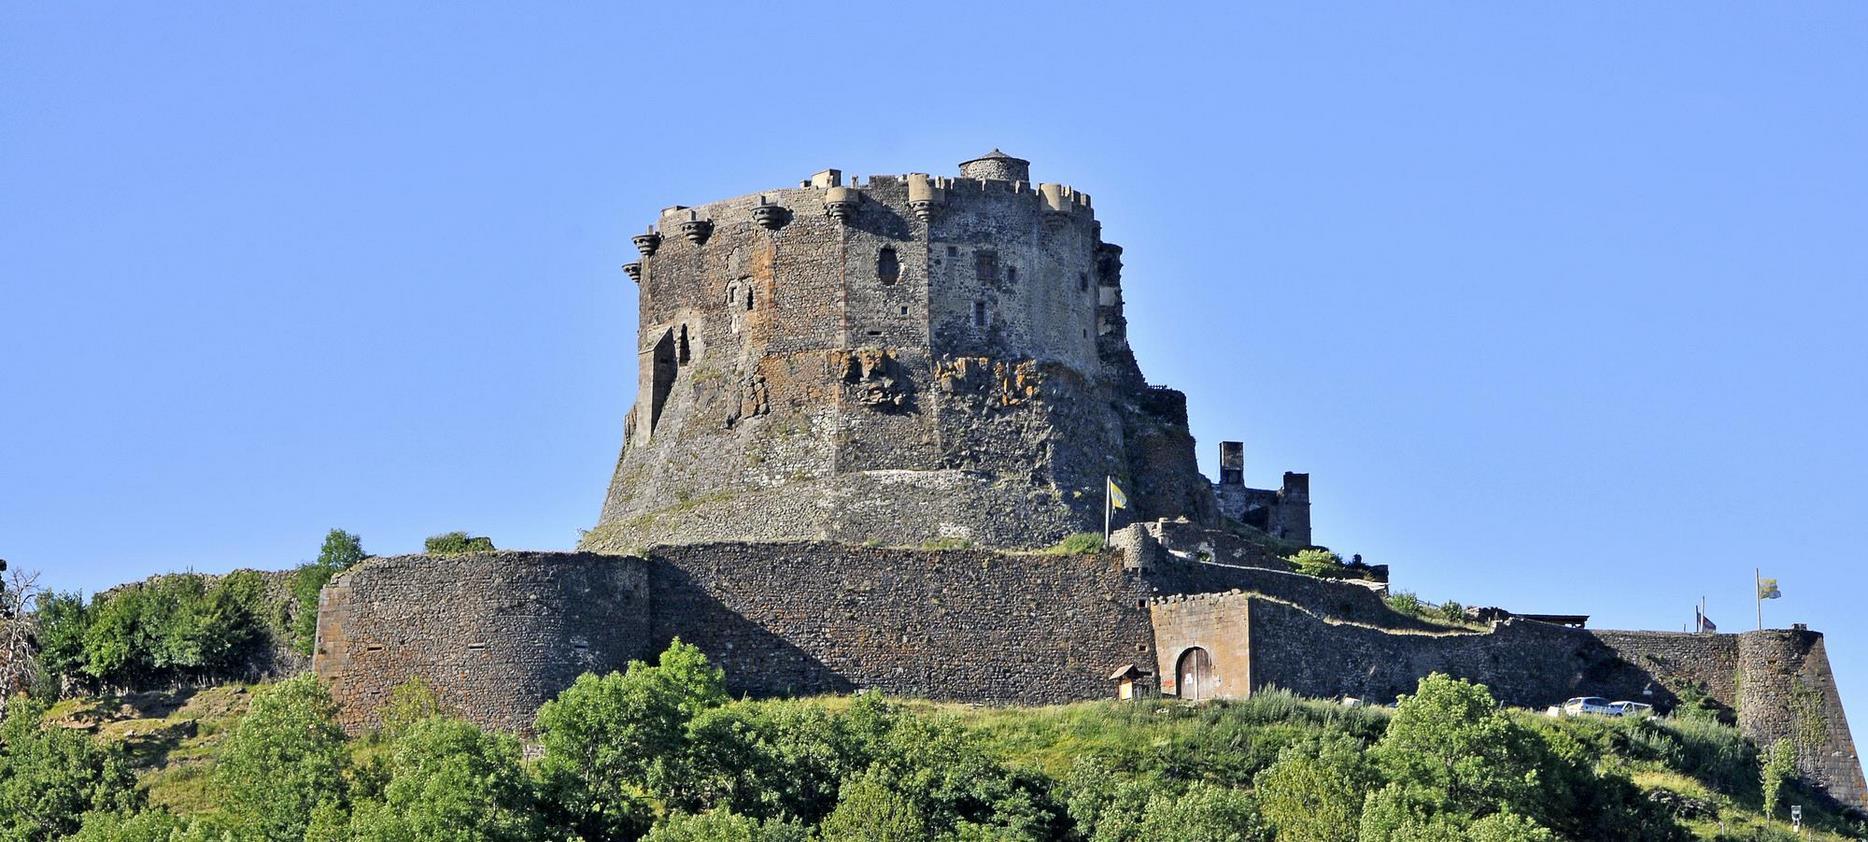 Super Besse - Château de Murol, medieval fortress in Auvergne